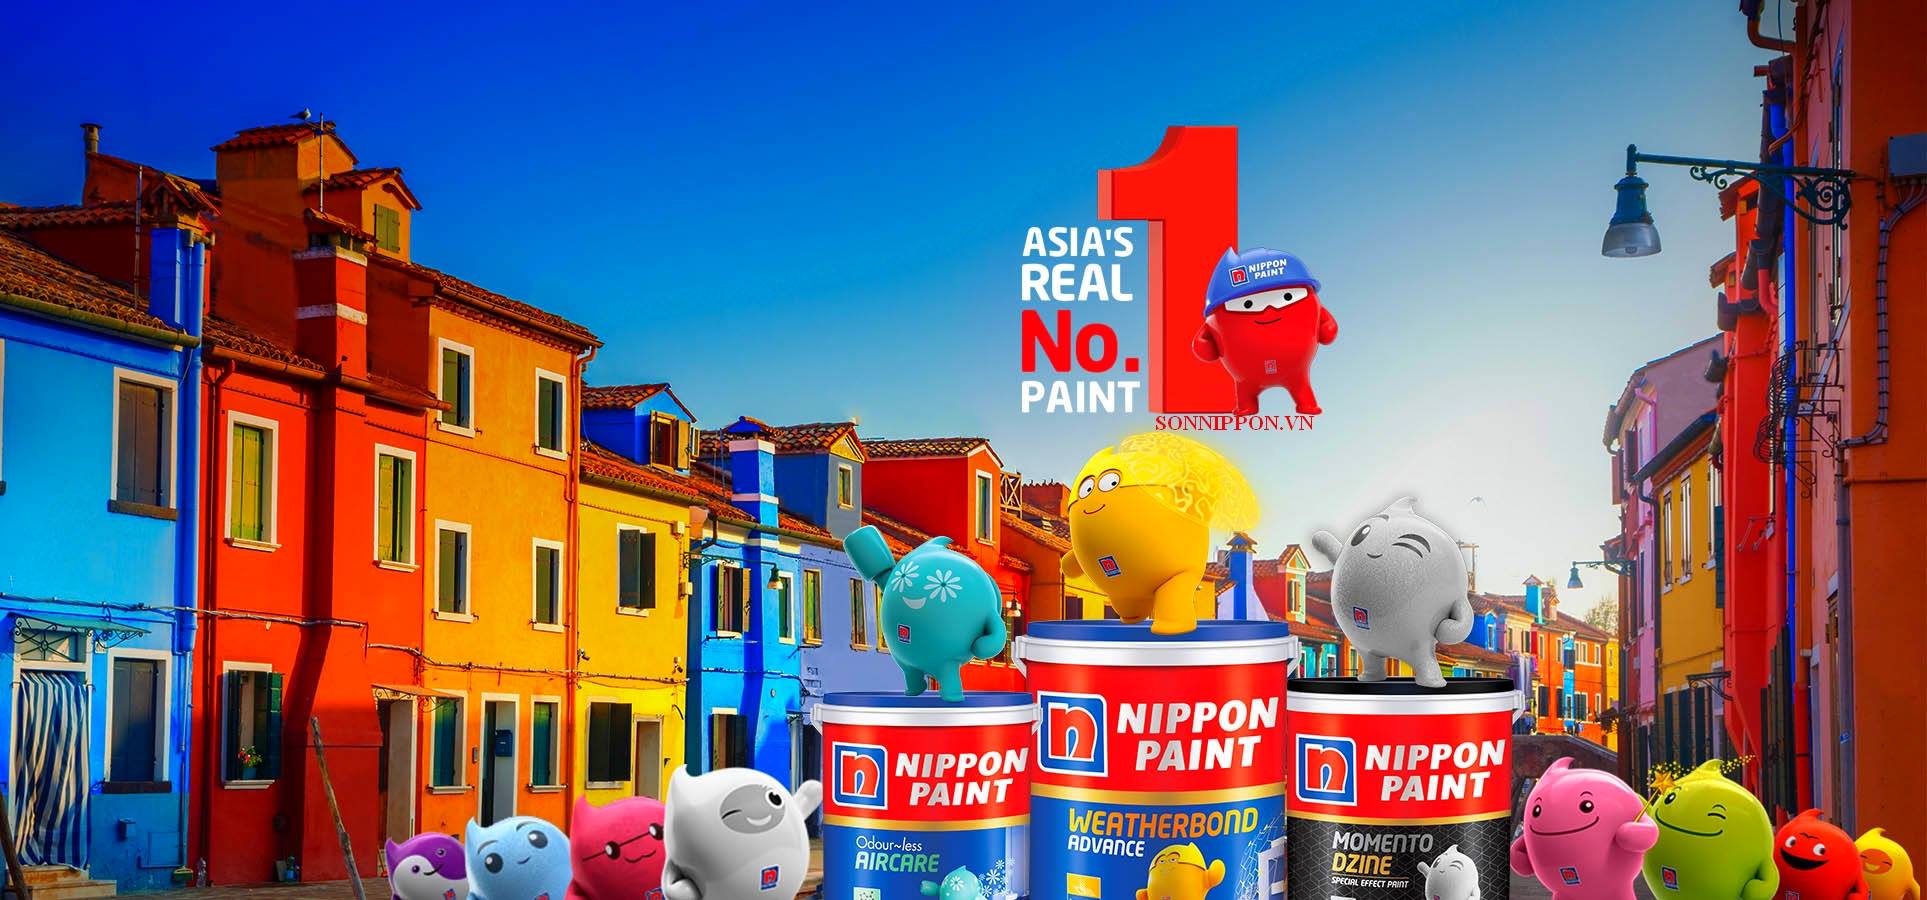 Bảng màu sắc đại lý sơn nippon tại nghệ an đa dạng và phong phú nhất